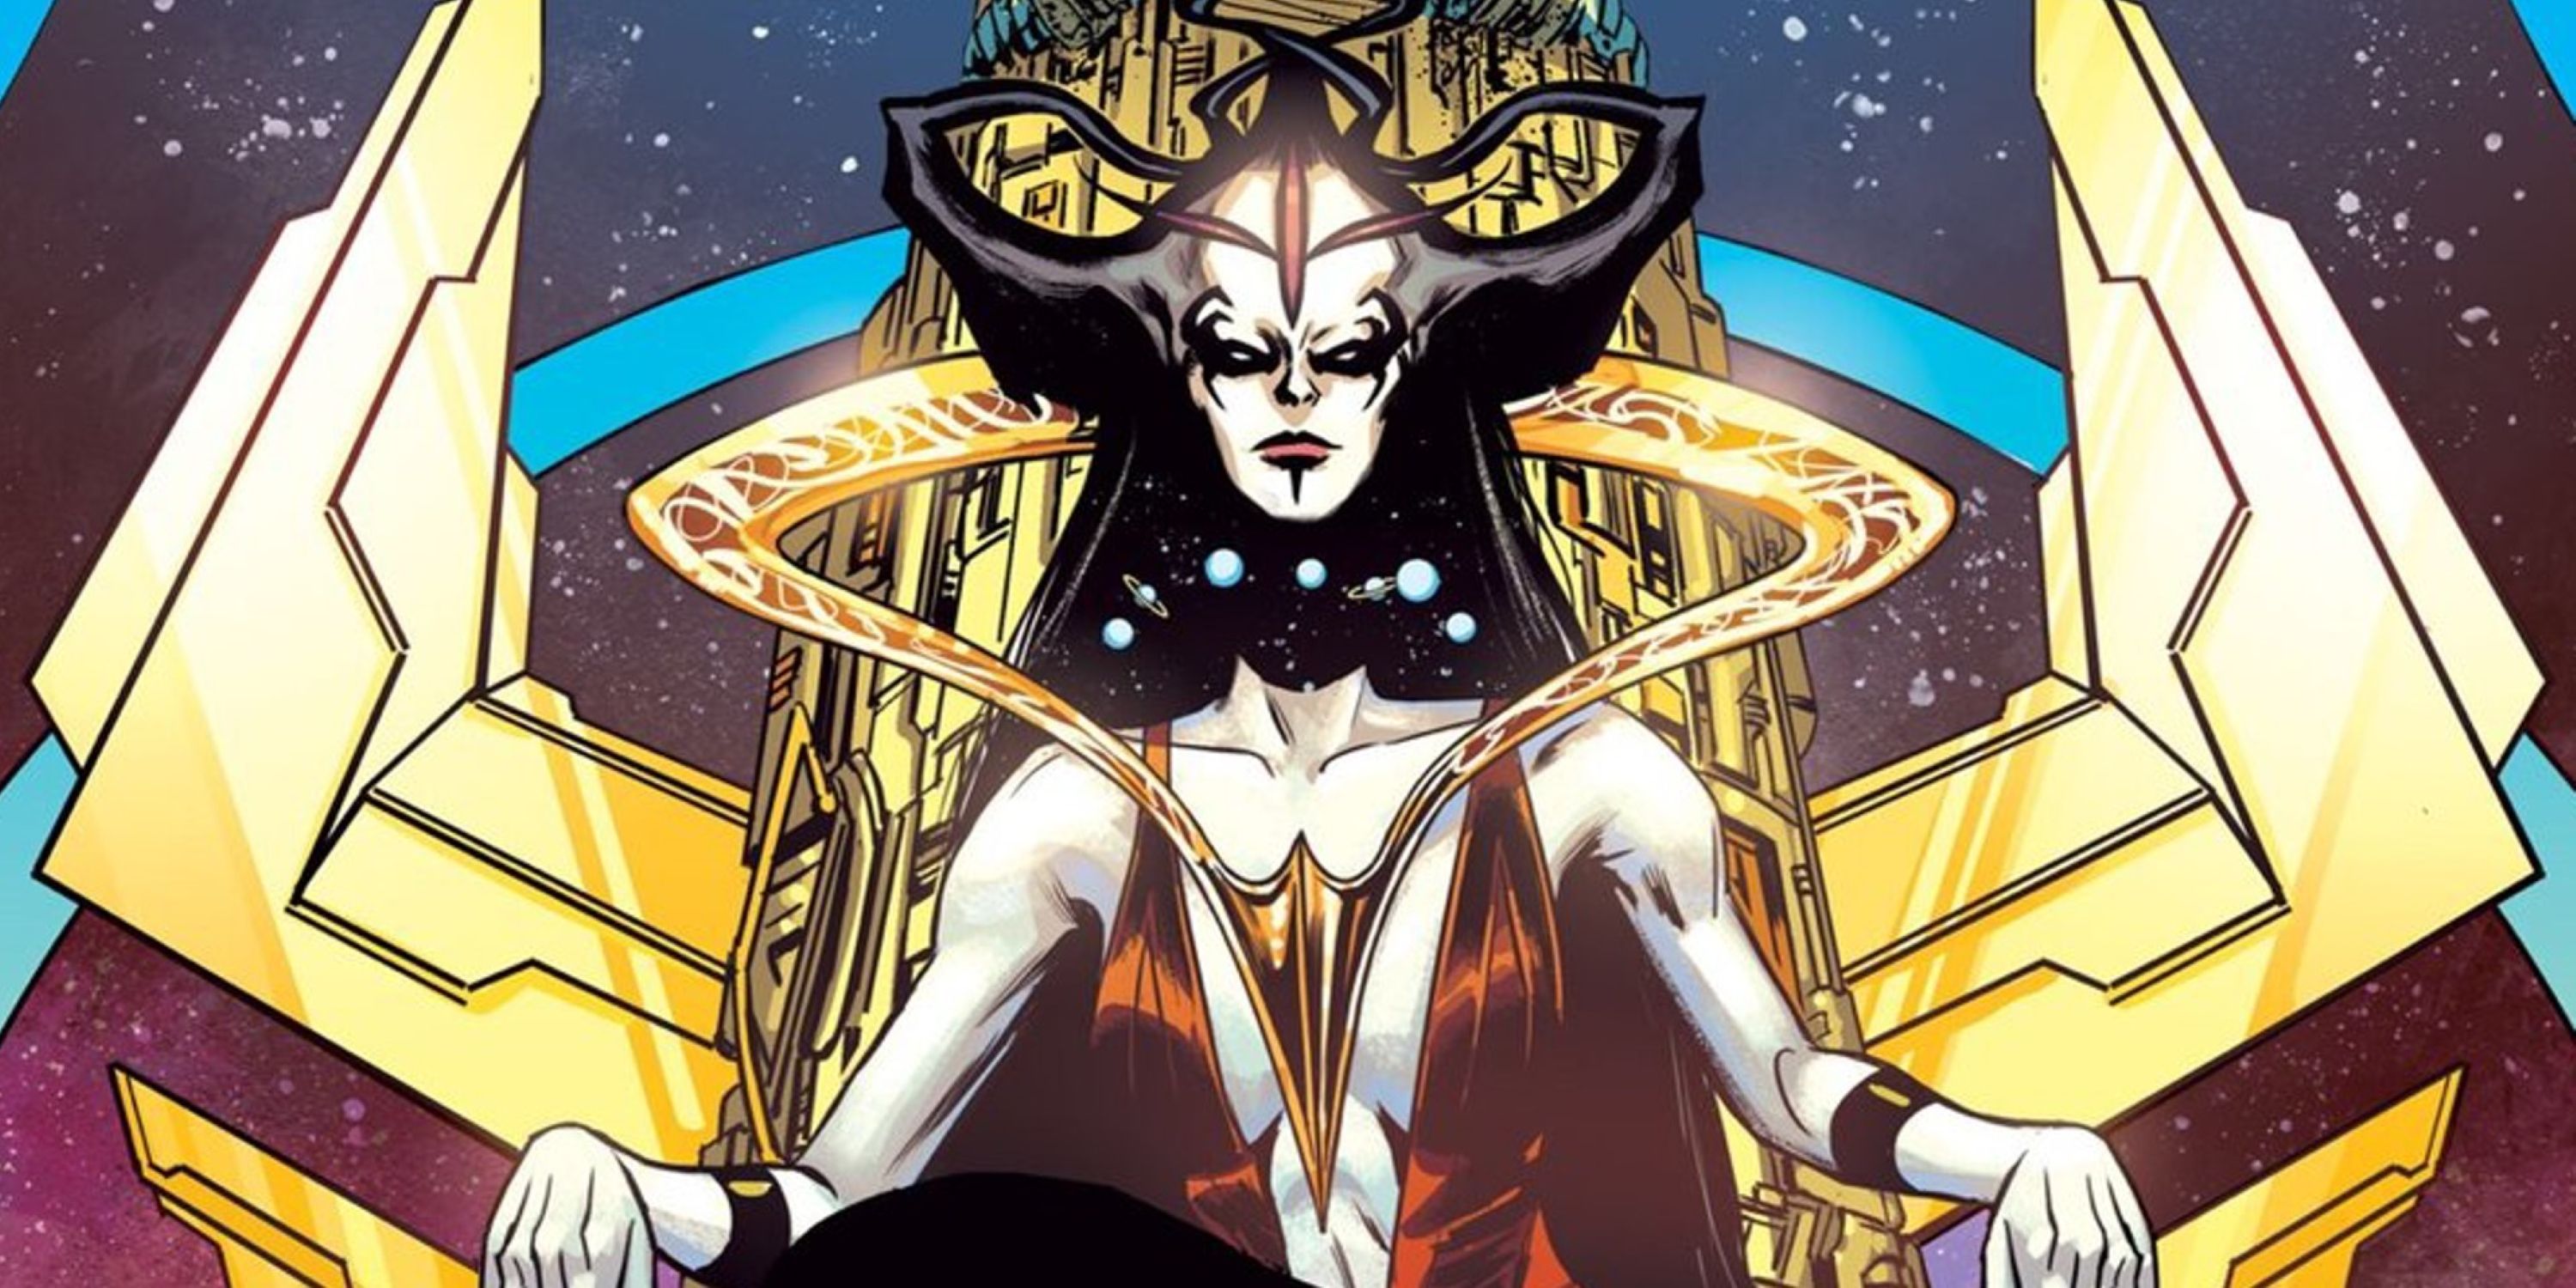 Perpetua nosi swoją skręconą koronę i zasiada na swoim niebiańskim tronie w DC Comics